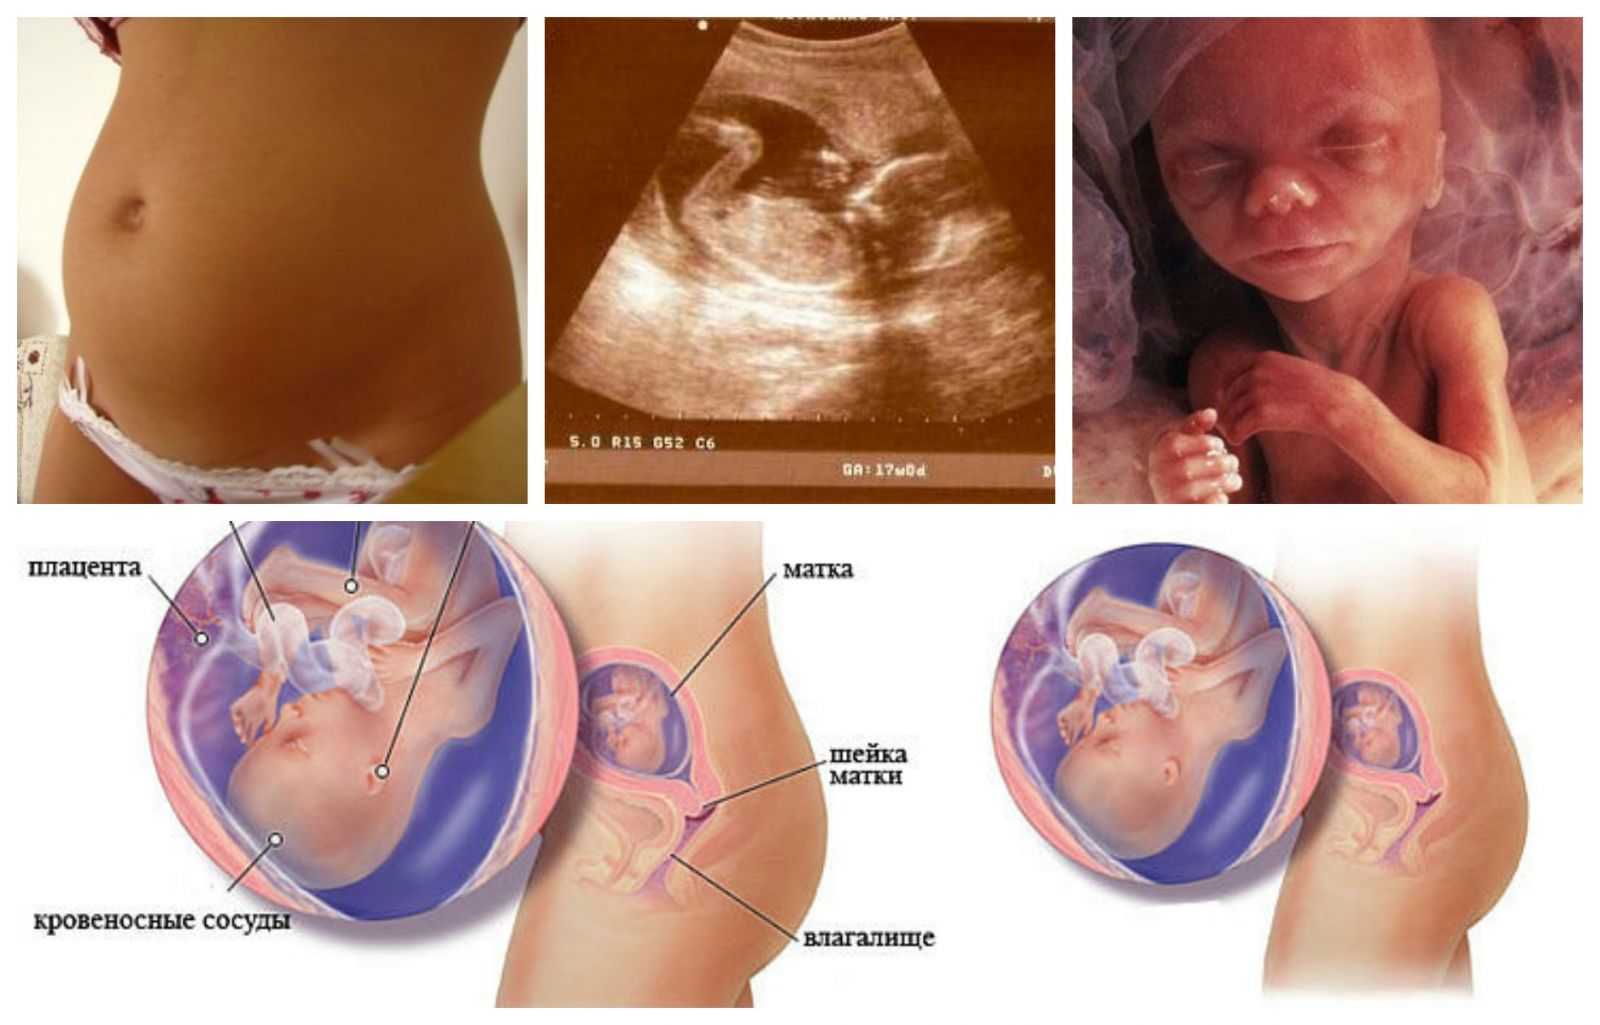 16 неделя беременности: что происходит с малышом и мамой, развитие плода, ощущения женщины, фото узи, живота